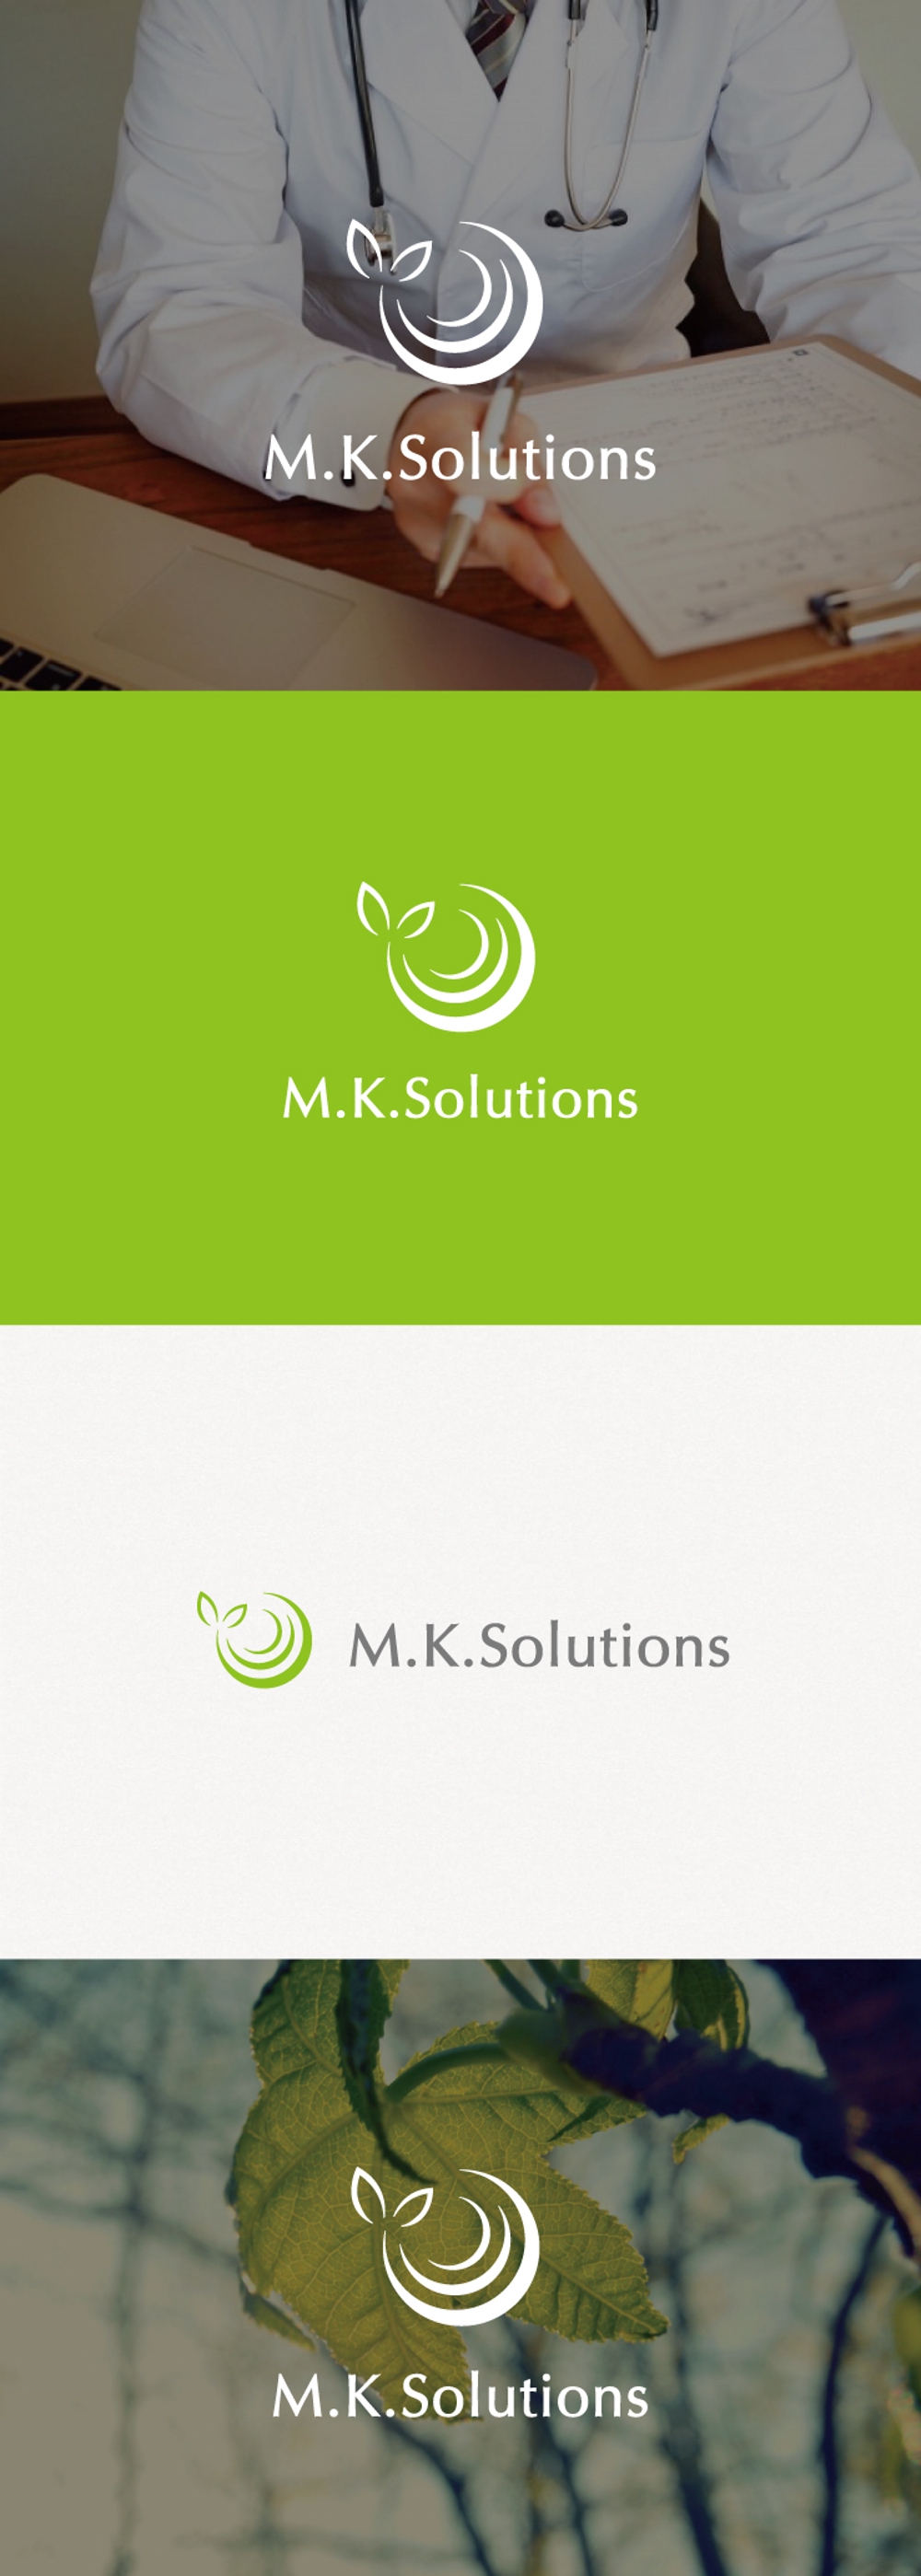 産業医活動・健康管理業務「M.K.Solutions株式会社」のロゴマークデザイン